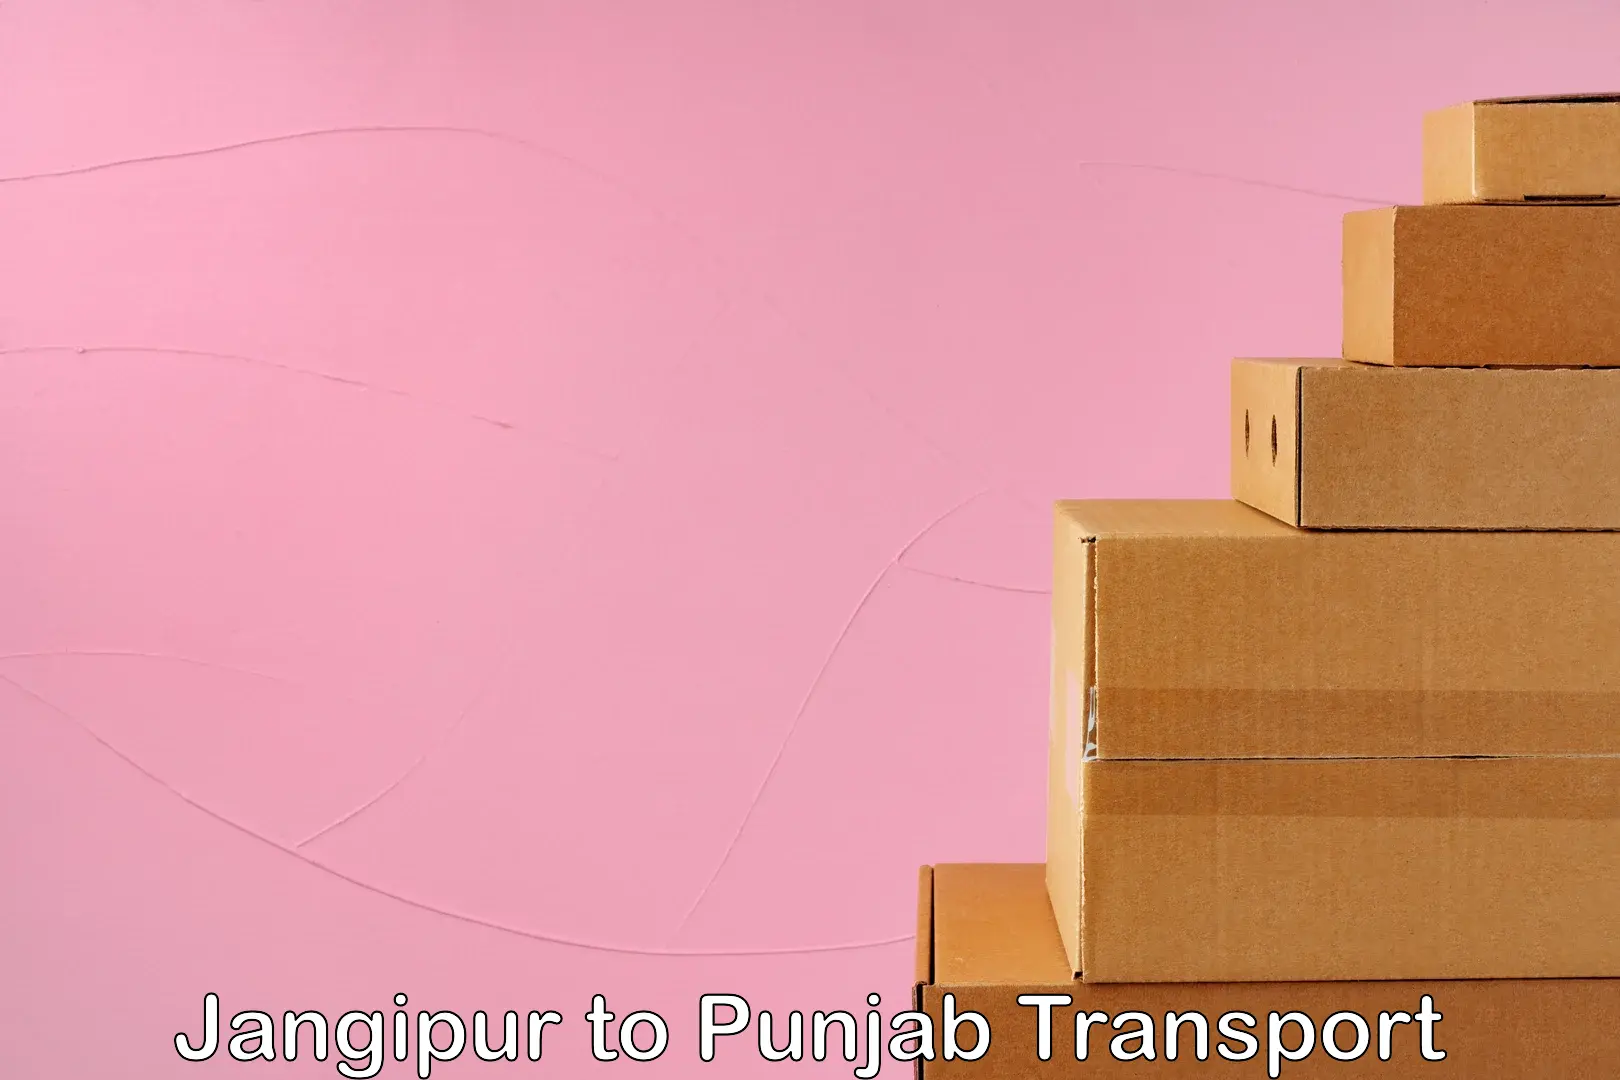 Daily transport service Jangipur to Punjab